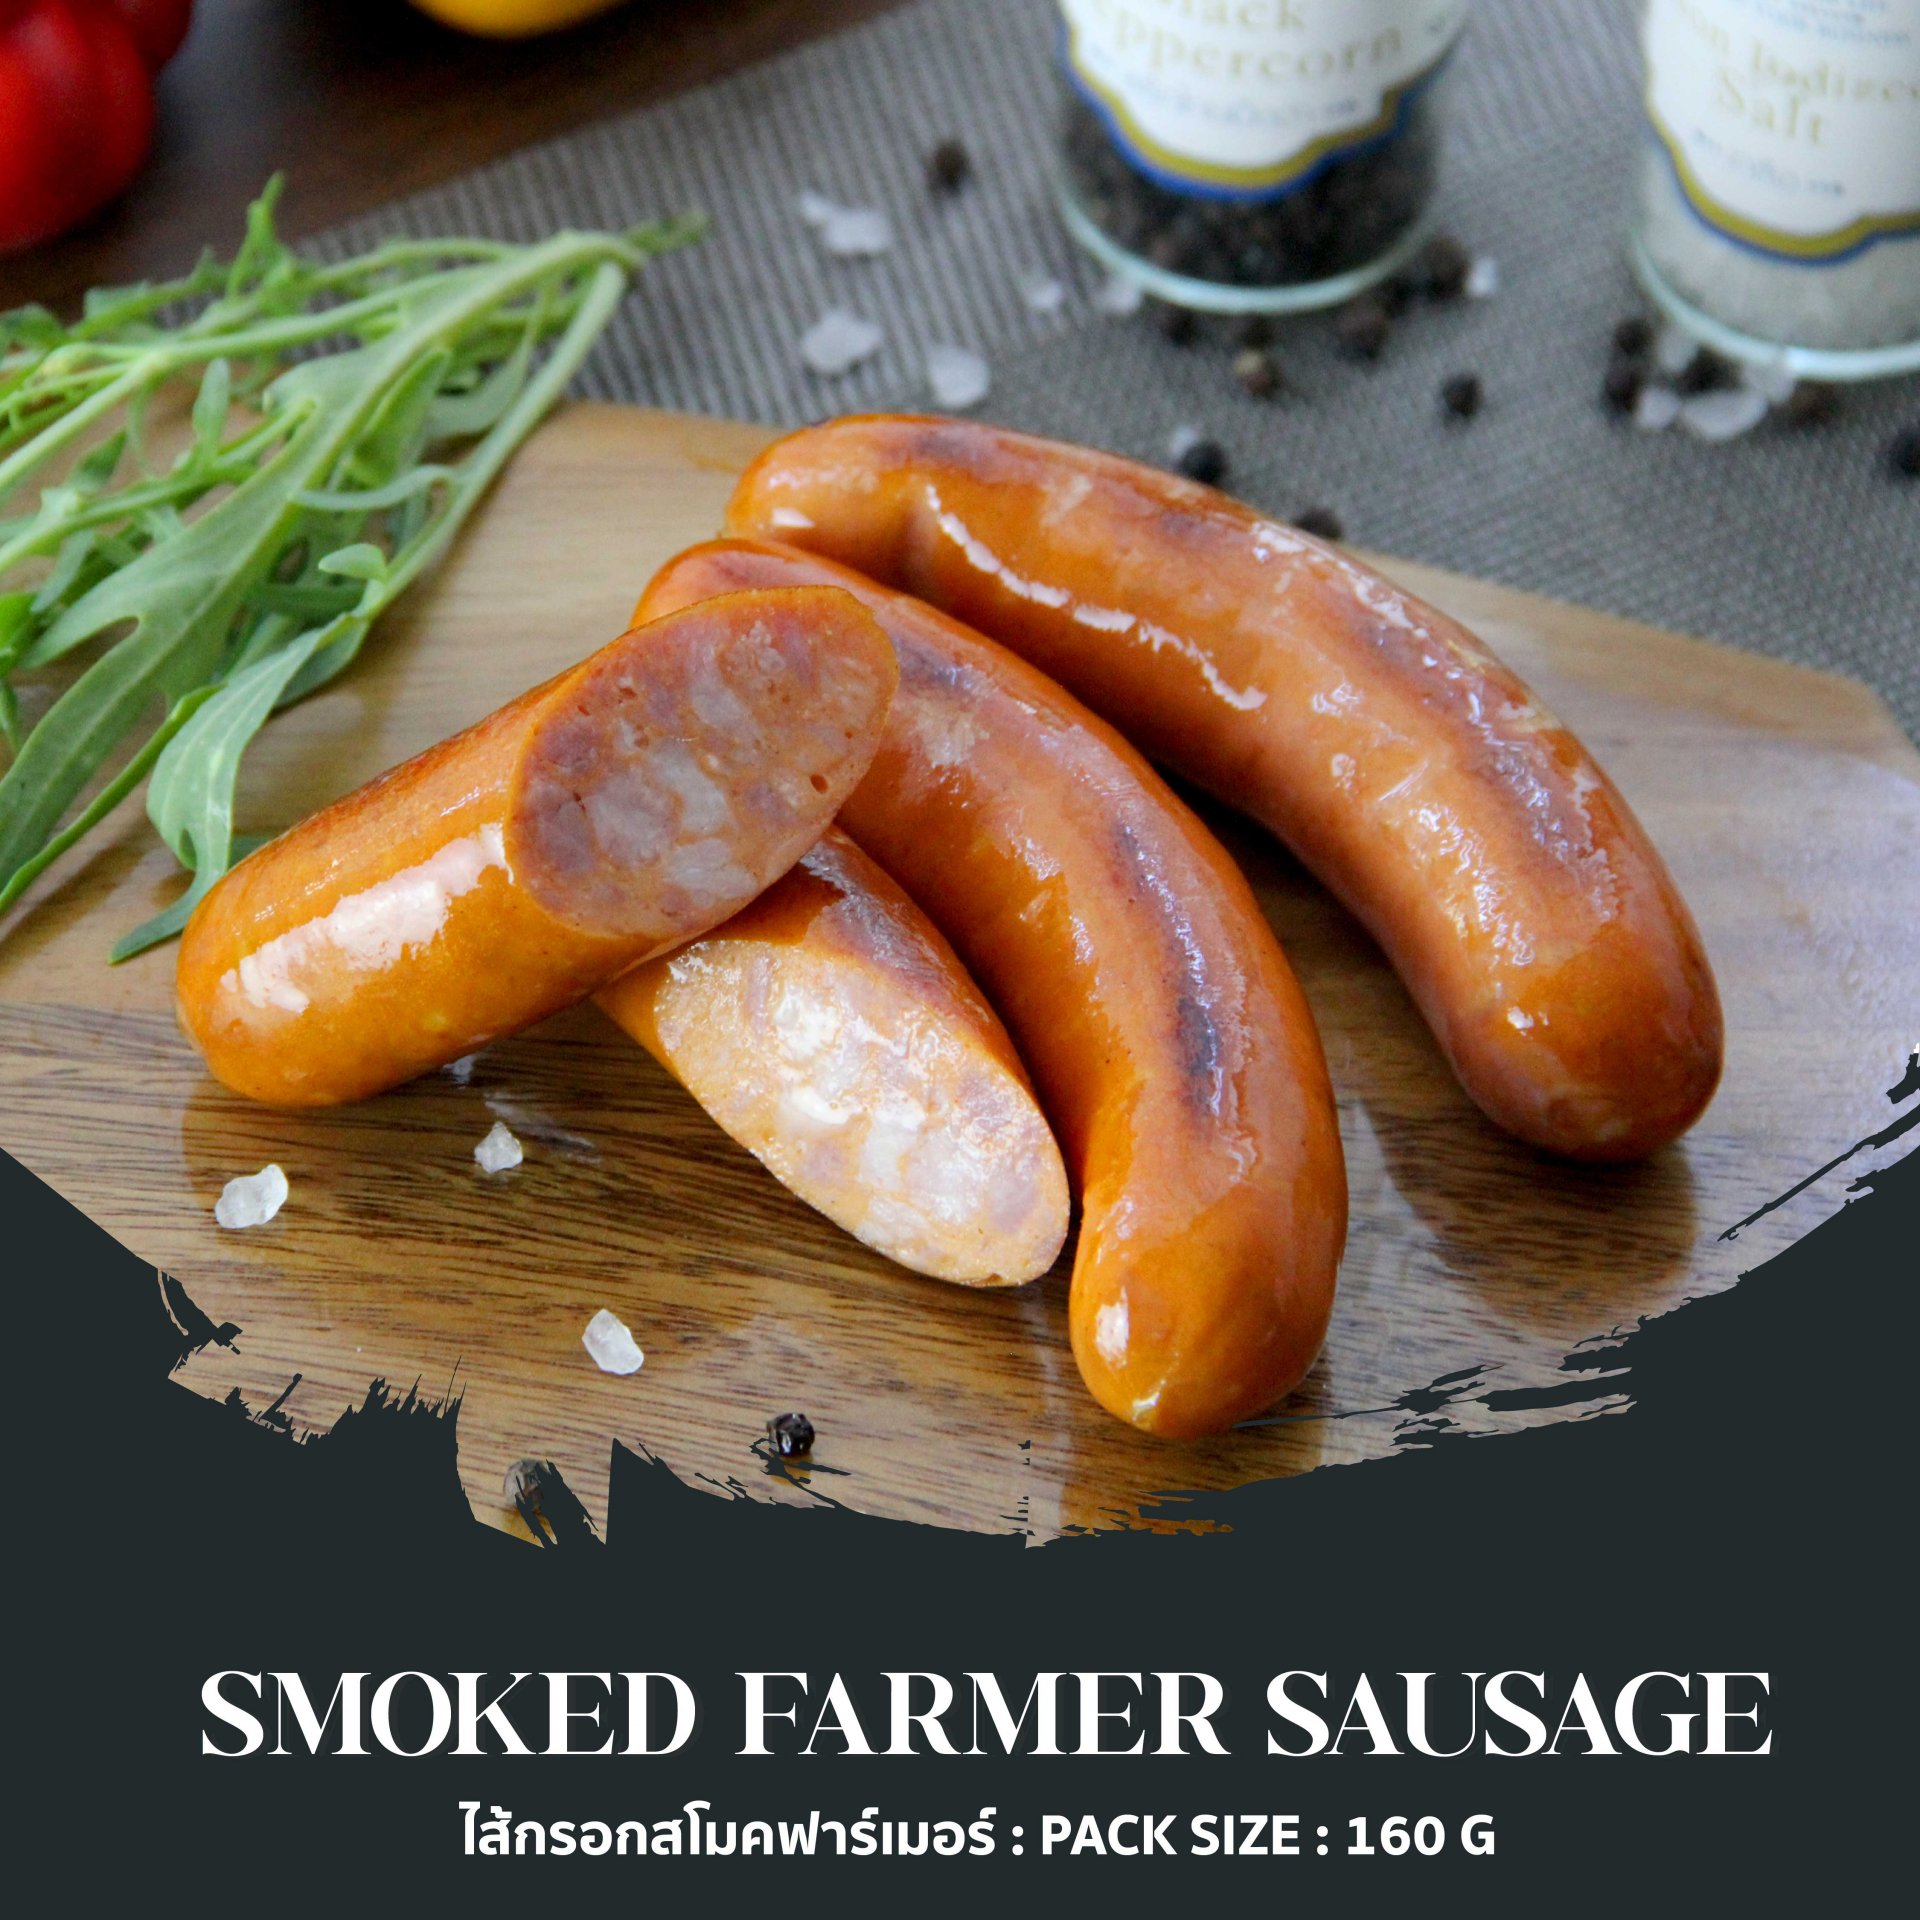 Smoked Farmer Sausage